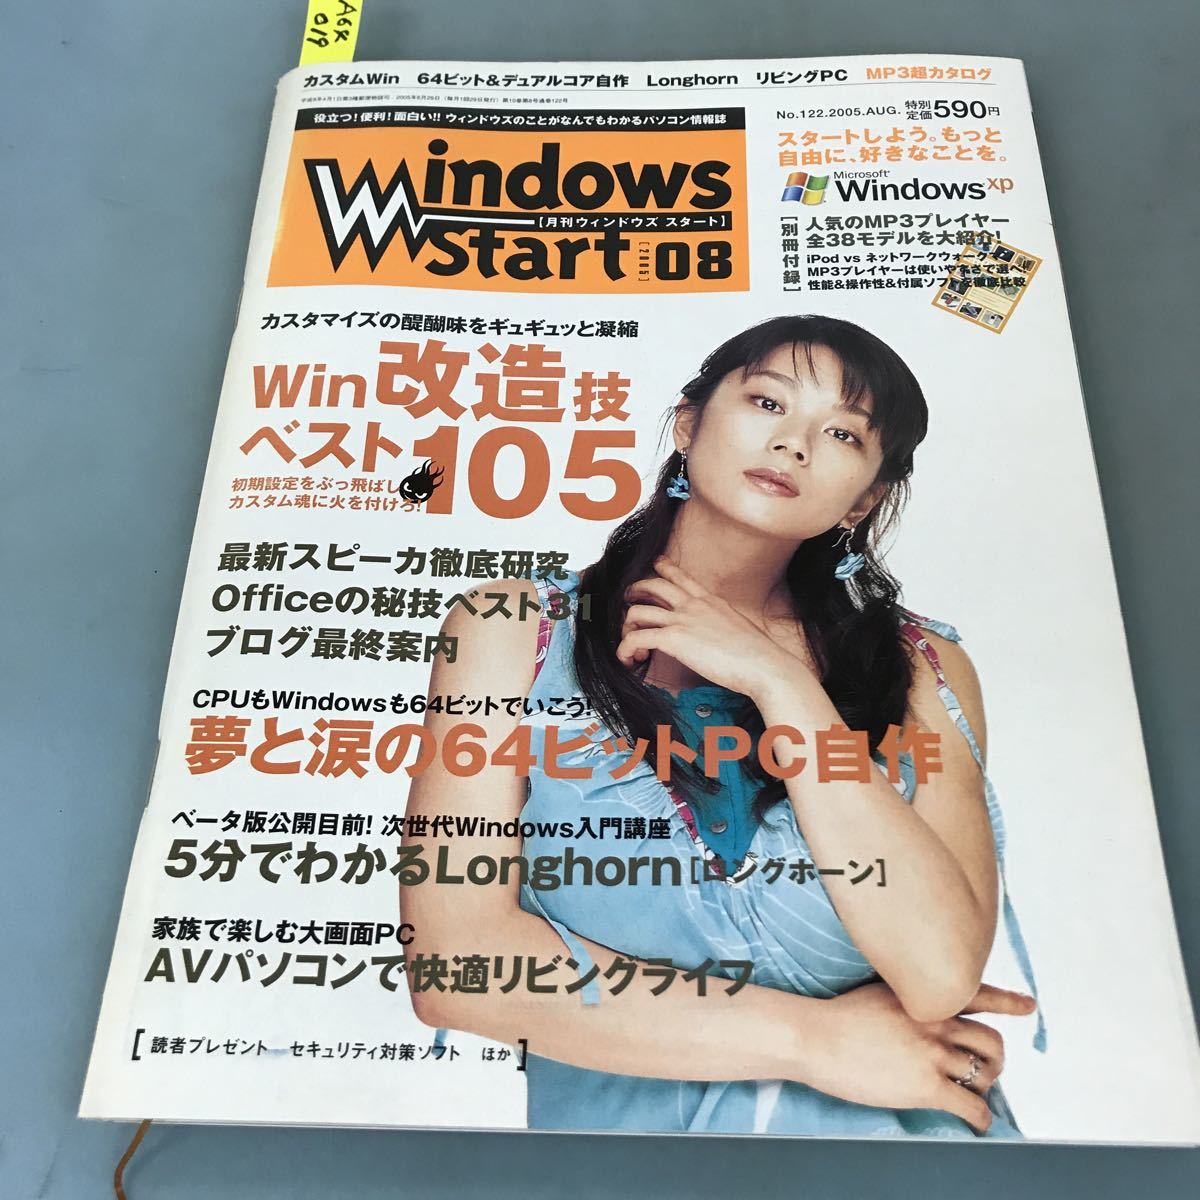 福袋特集 2022 A64-019 Windows Start[月刊ウィンドウズスタート][2005]08NO.122 カスタムWin/Longhorn/別冊付録リビングPC/64ビット&デュアルコアで自作 パソコン一般